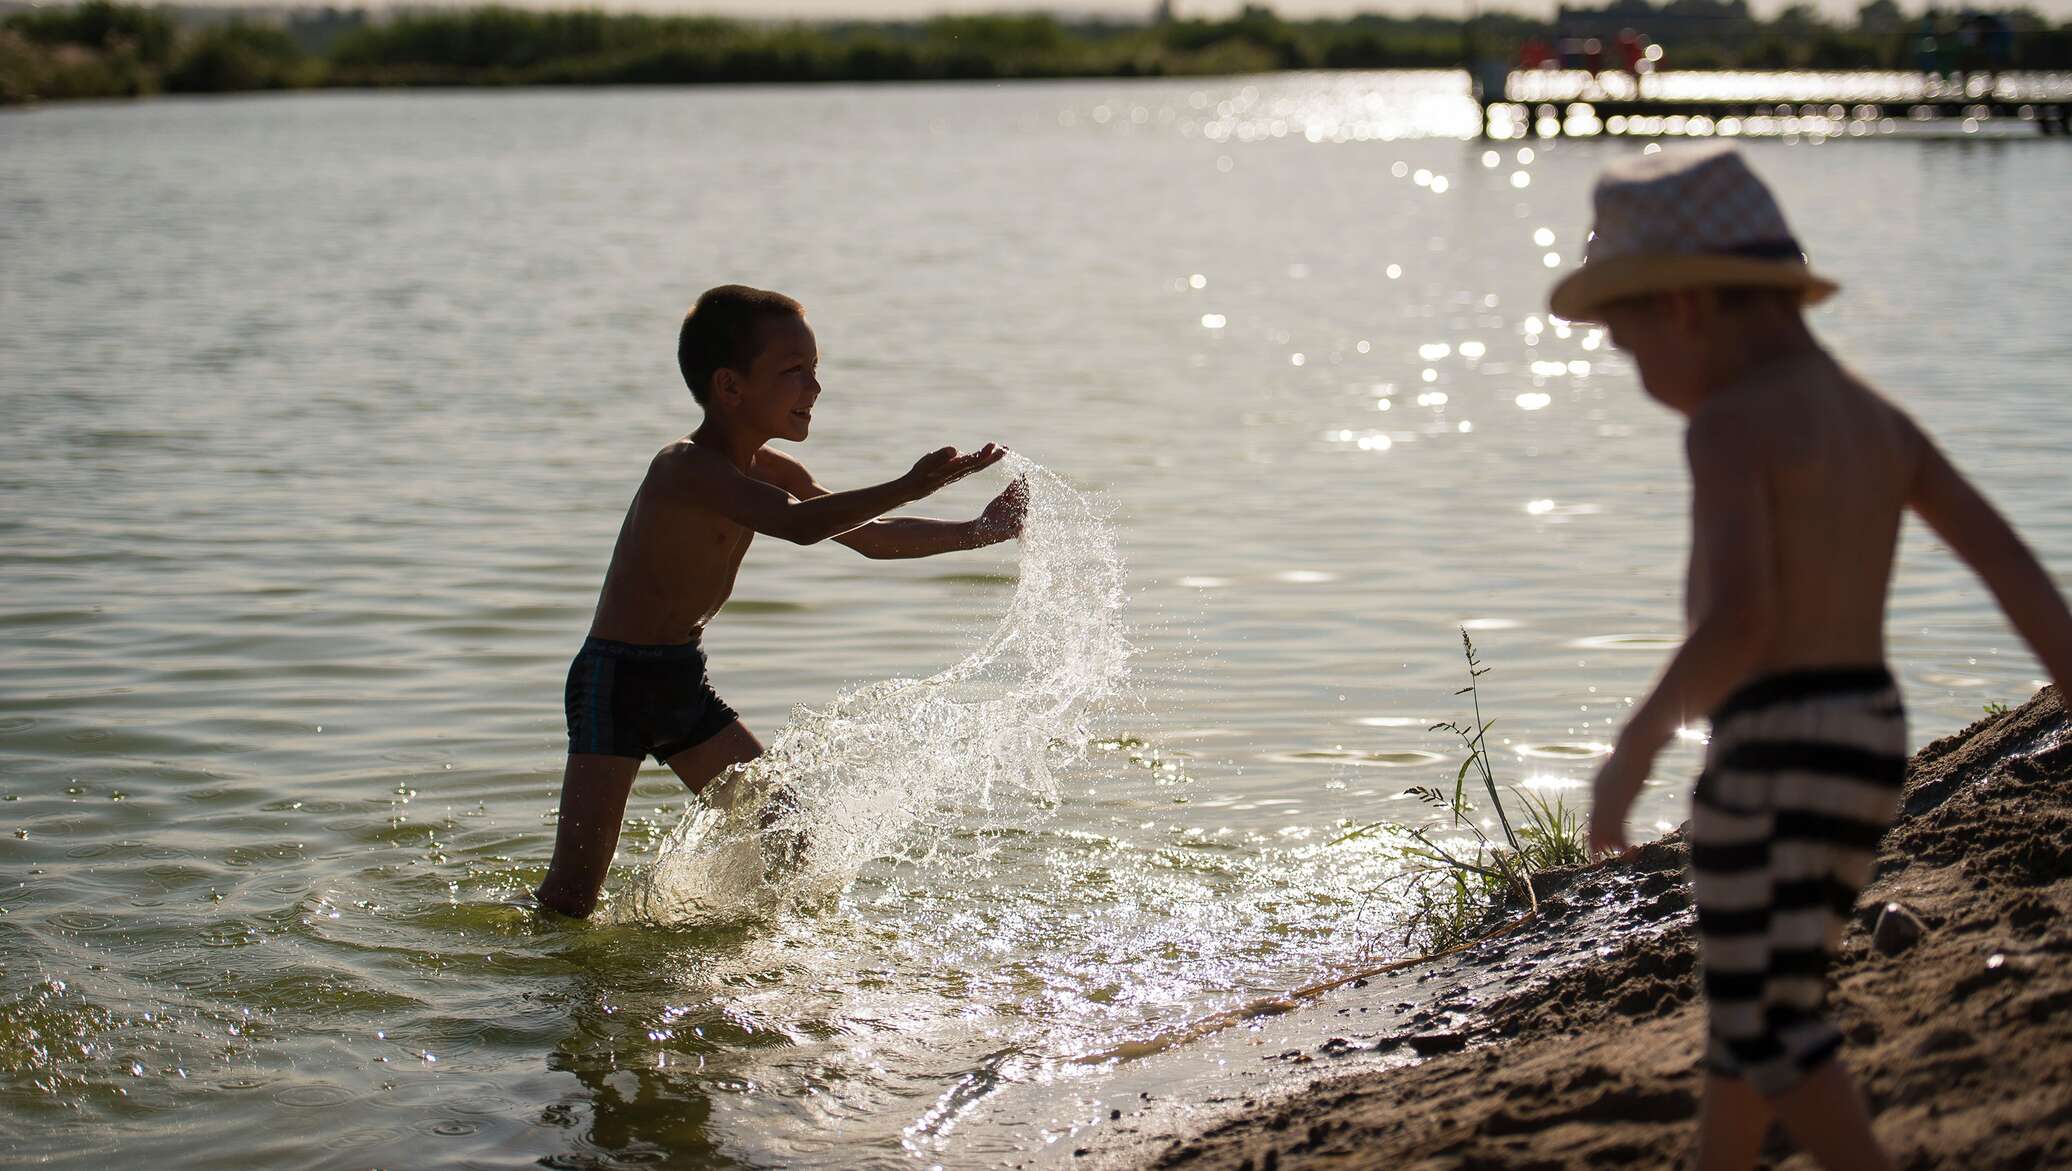 На речке купаются ребята. Дети купаются ВМ озере. Река для детей. Мальчик на реке. Купание на речке.